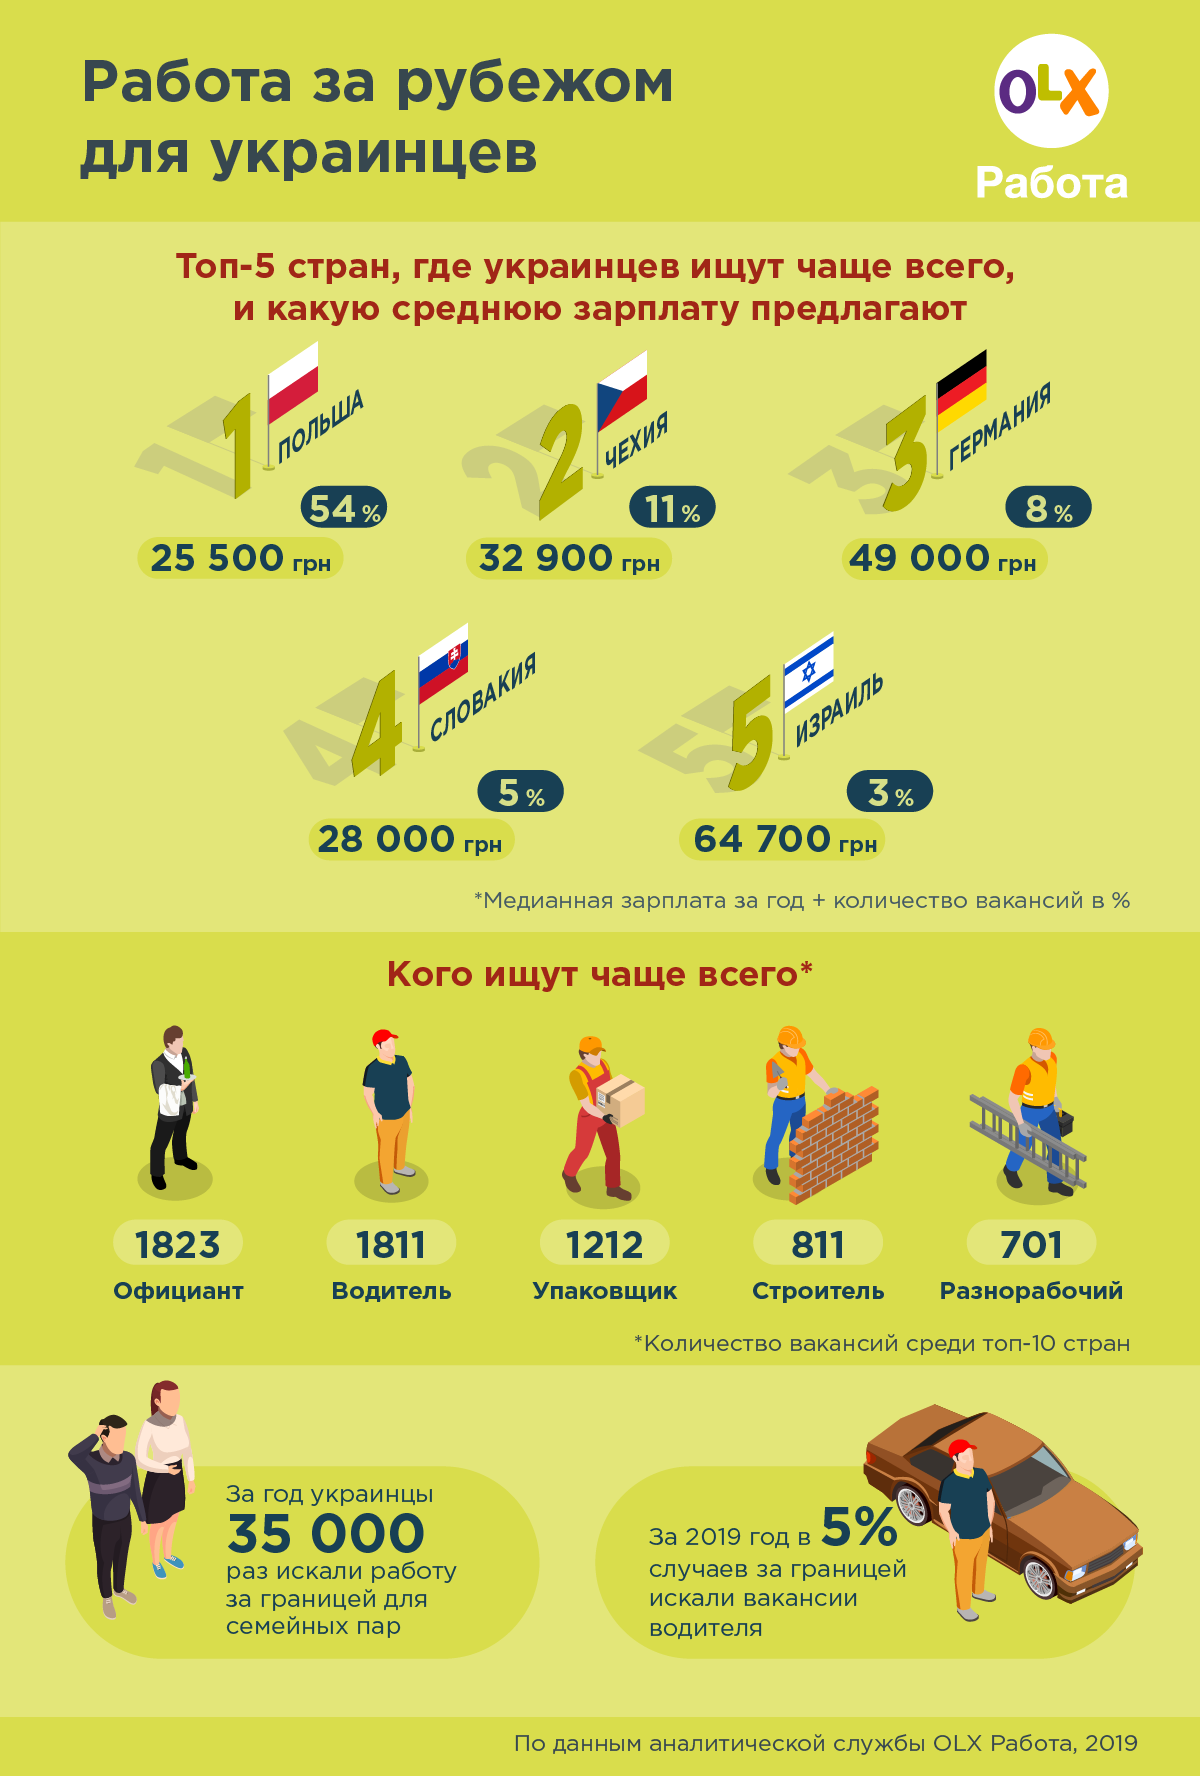 Не Польшей единой: в каких странах предлагали работу украинцам в 2019 году